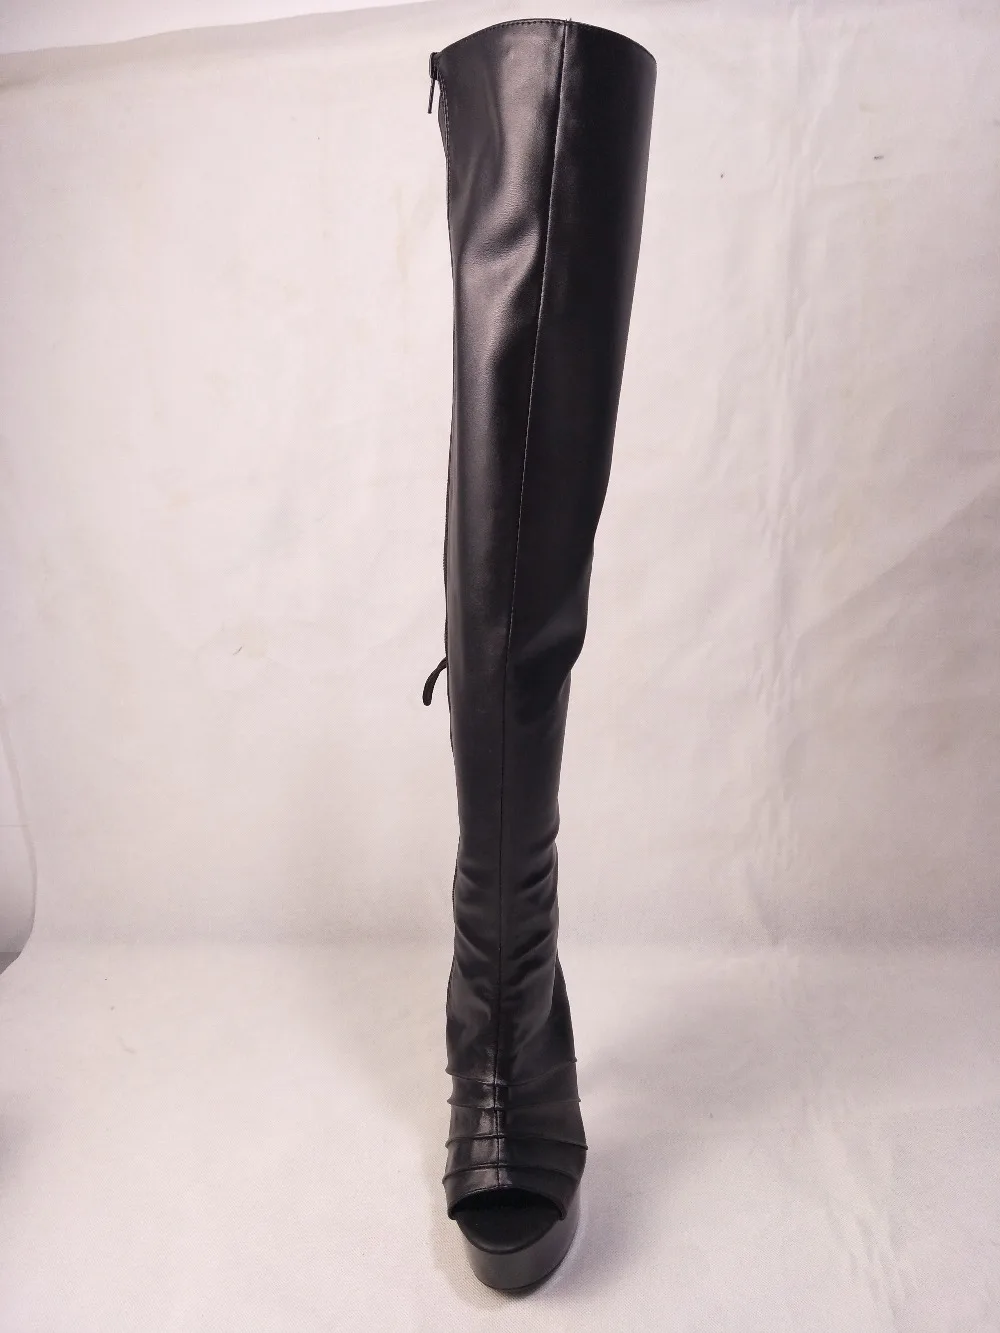 LAIJIANJINXIA/новая обувь на высоком каблуке женские Сапоги выше колена с вырезами Босоножки с открытым носком и ремешком сзади высокие сапоги до бедра на каблуке 20 см